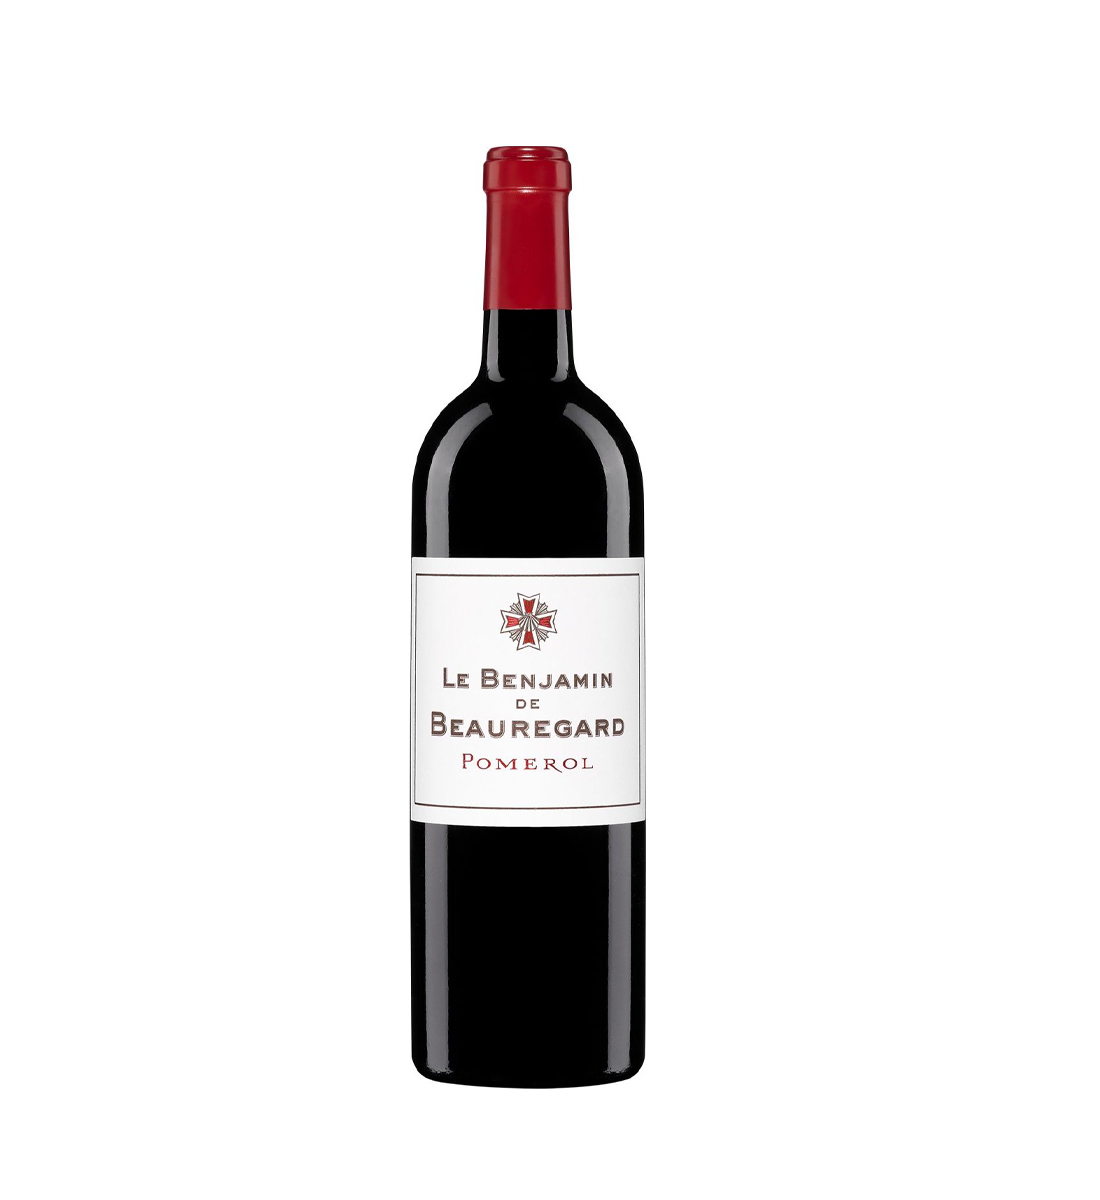 Le Benjamin de Beauregard Pomerol - Vin Rosu Sec - Franta - 0.75L